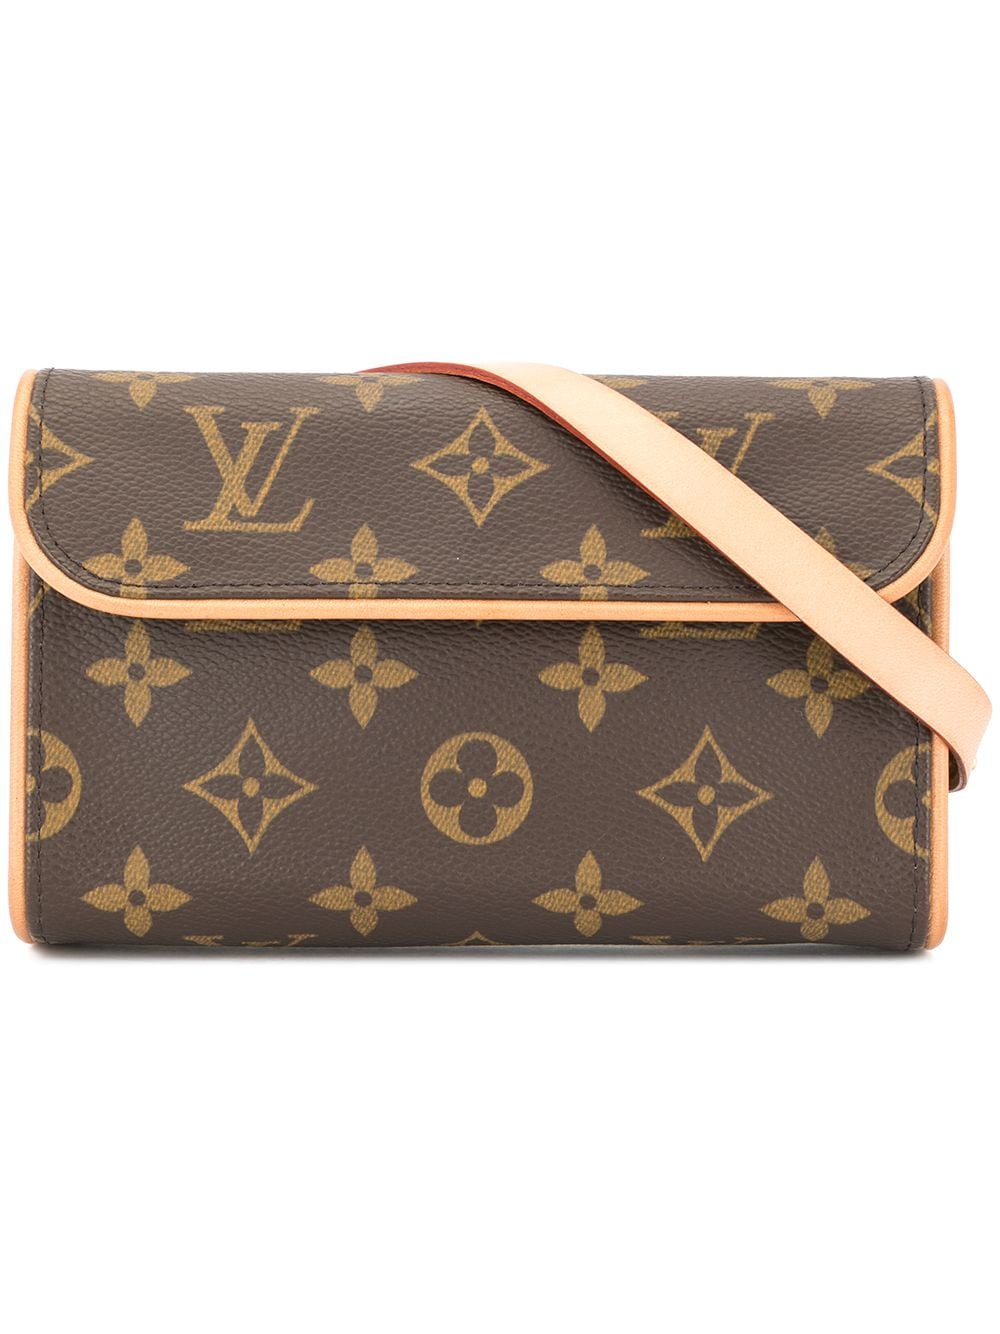 Womens Authentic Louis Vuitton Florentine Belt Bag